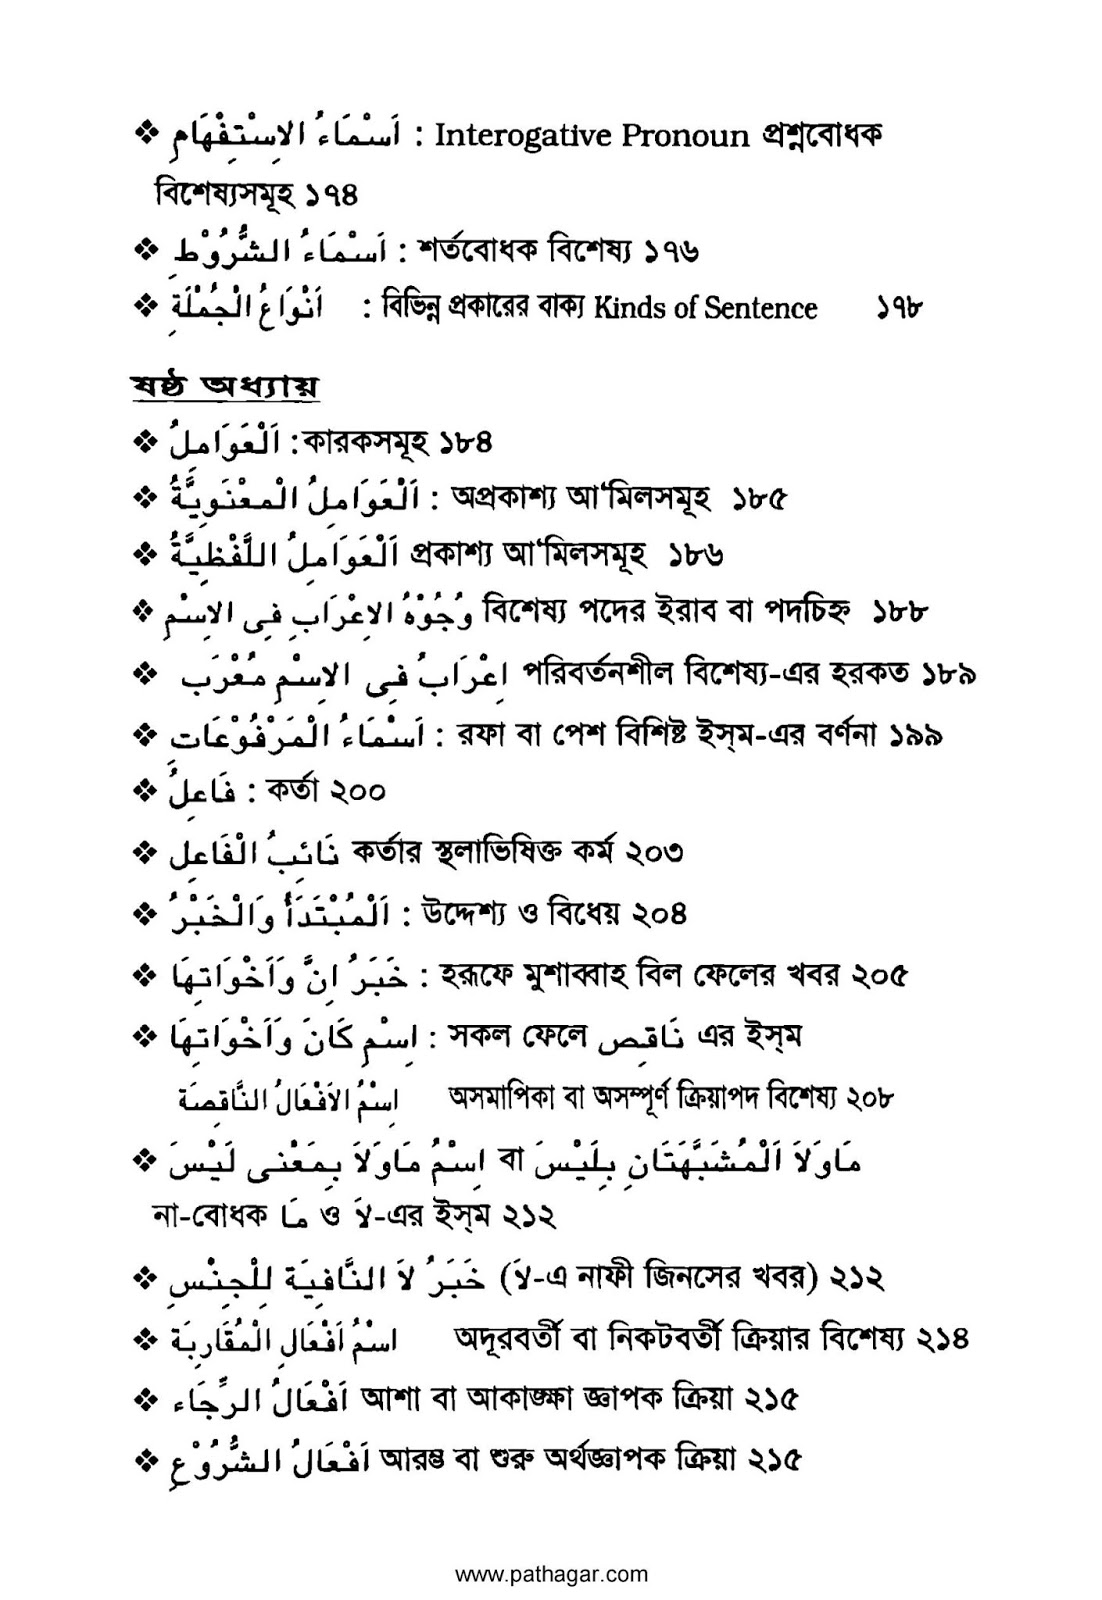 আরবি ব্যাকরণ pdf download- আরবি ব্যাকরণ বই